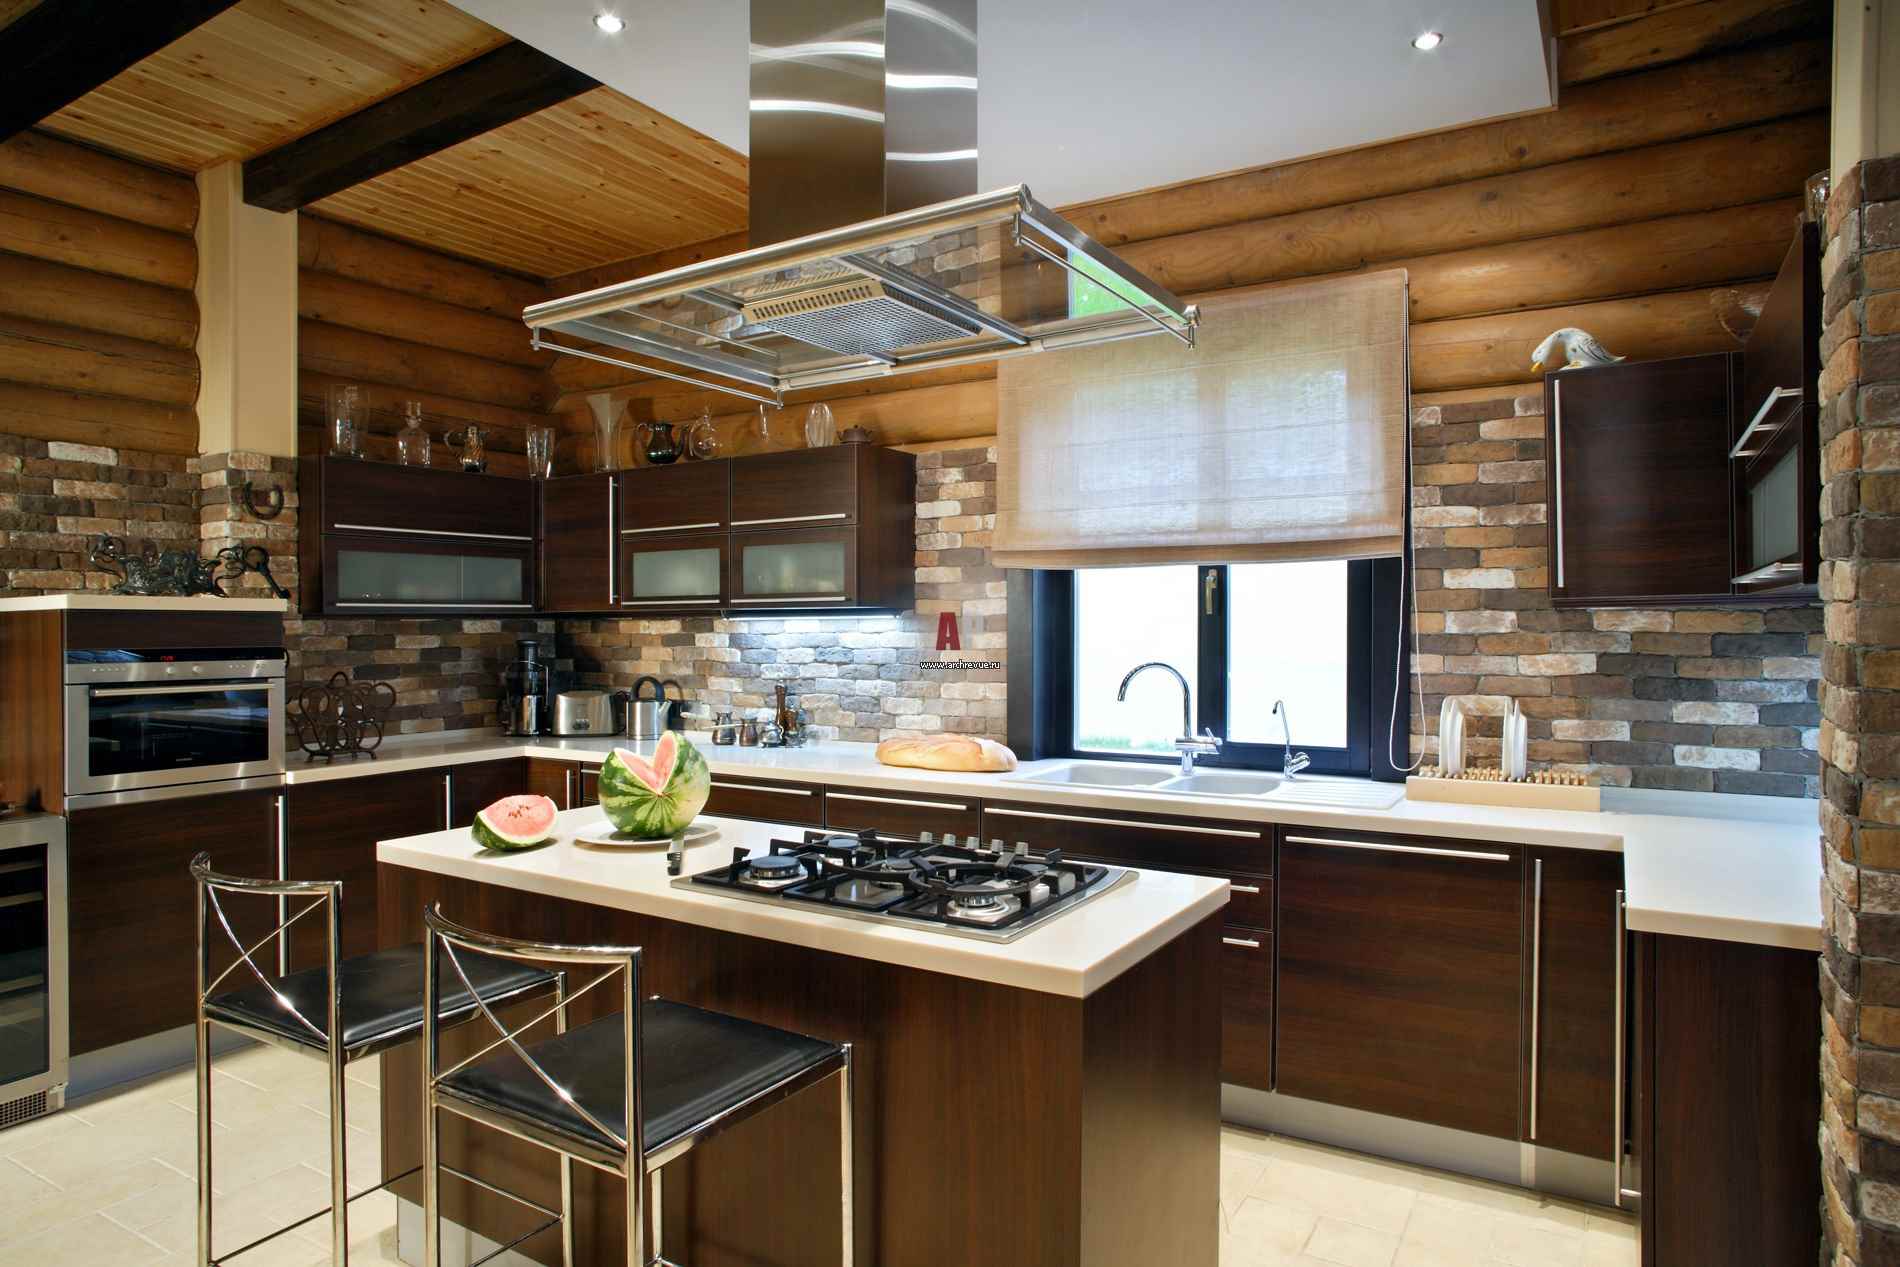 variant van het ongewone ontwerp van de keuken in een houten huis